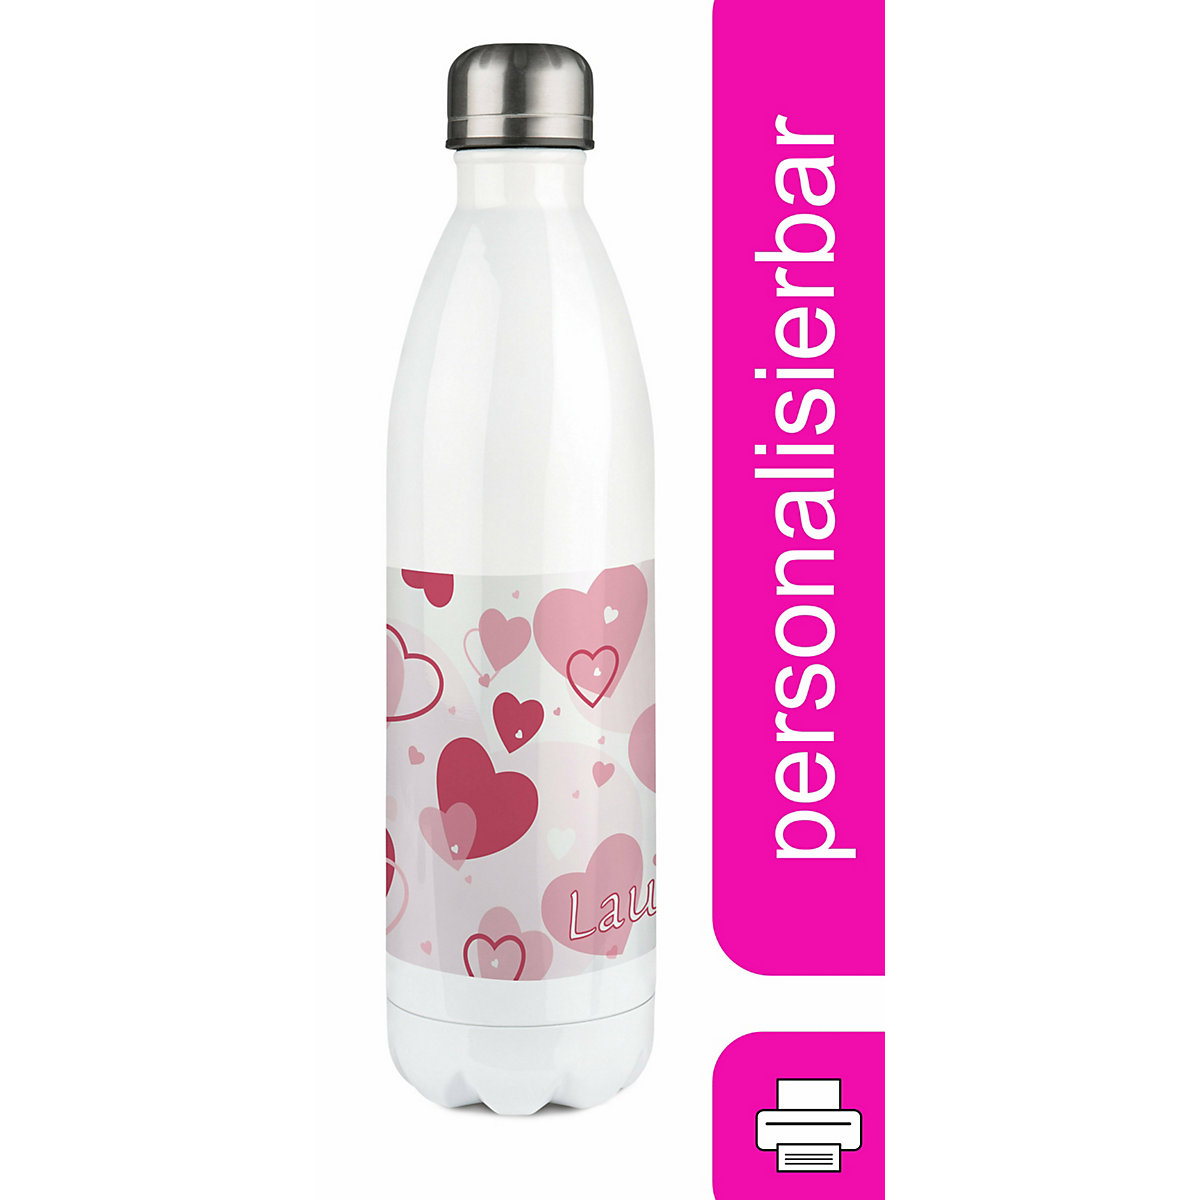 CreaDesign Edelstahl Kinder Thermoflasche / Trinkflasche bunt Herz Farbe rosa Spülmaschinenfest Auslaufsicher Bruchfest Doppelwandig Für Heißgetränke geeignet Mit Deckel Isoliert